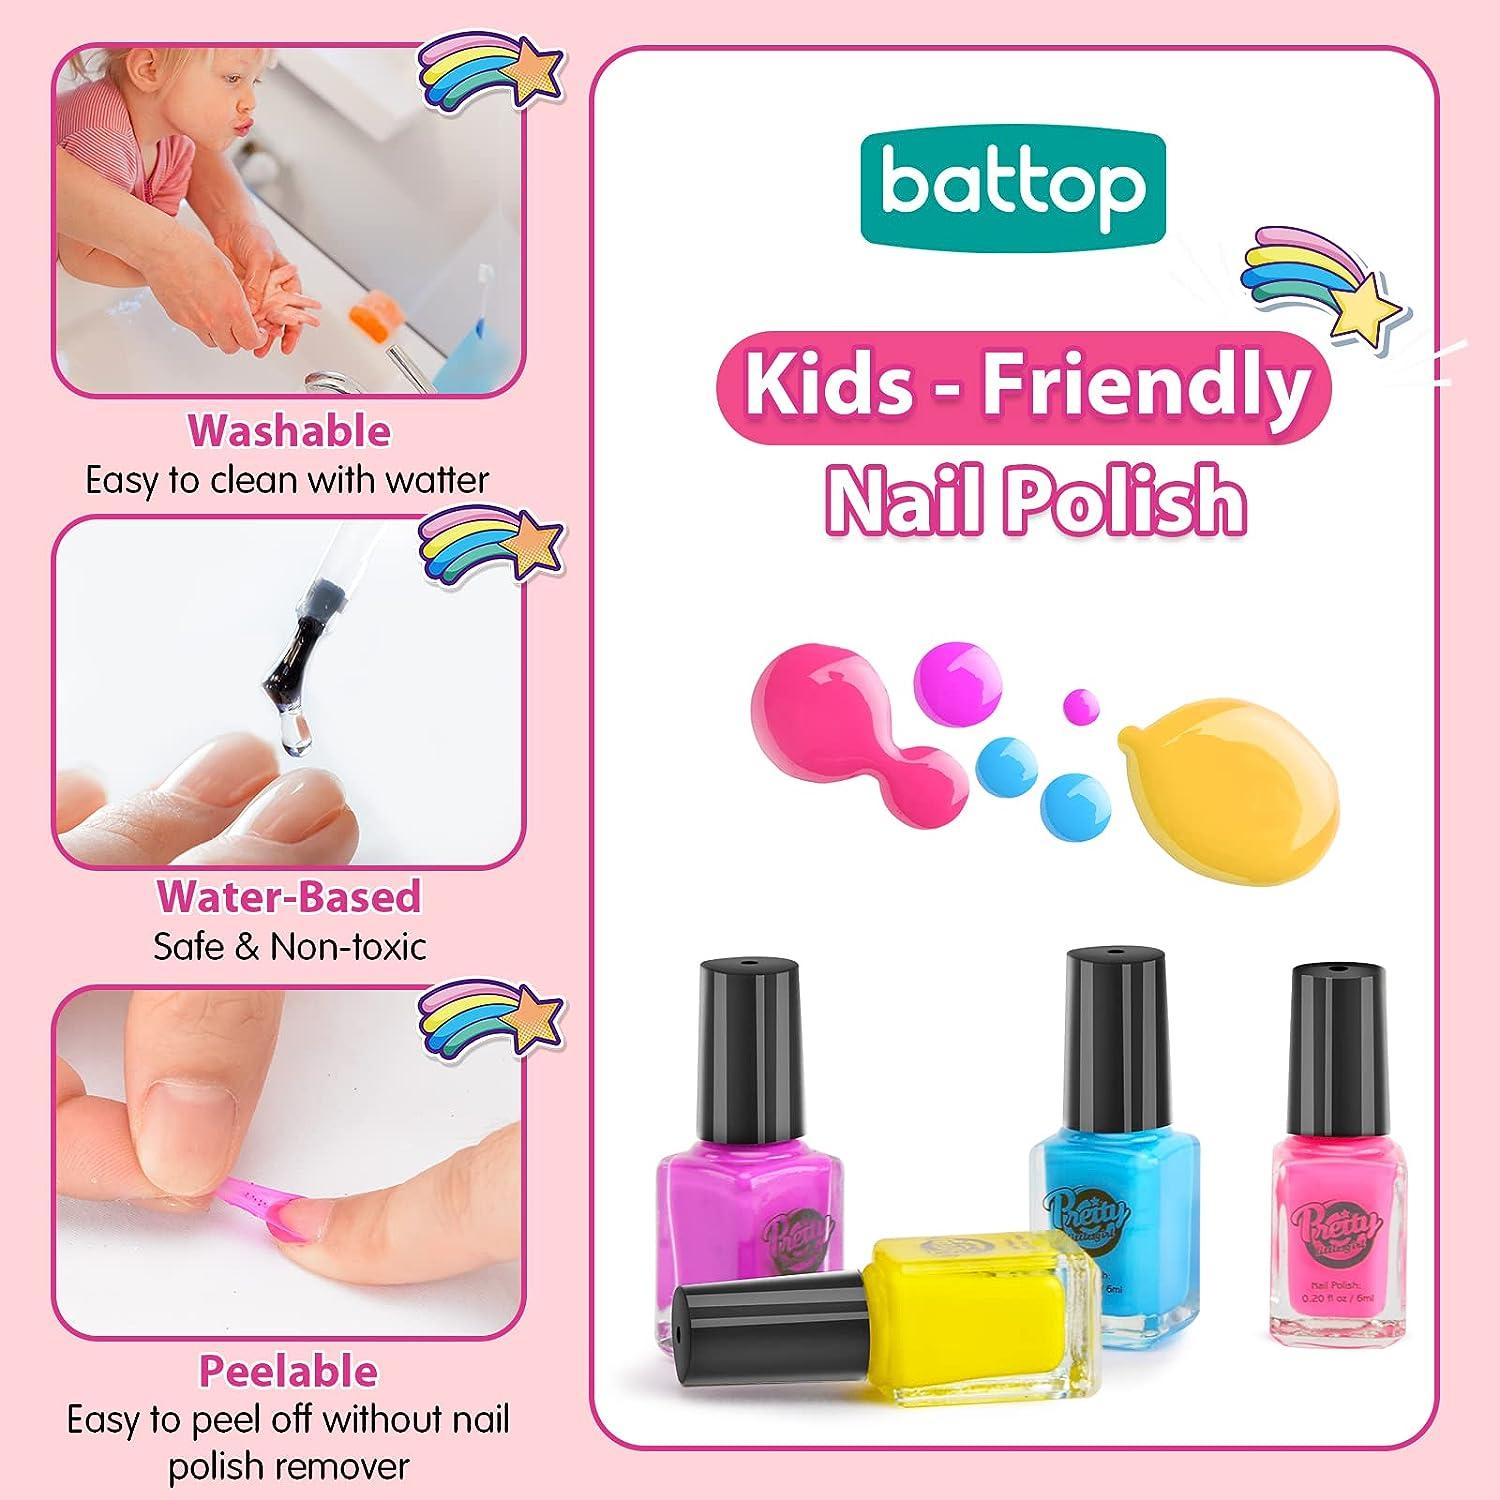 BATTOP Kids Nail Polish Set for Girls Nail Art Kits with Nail